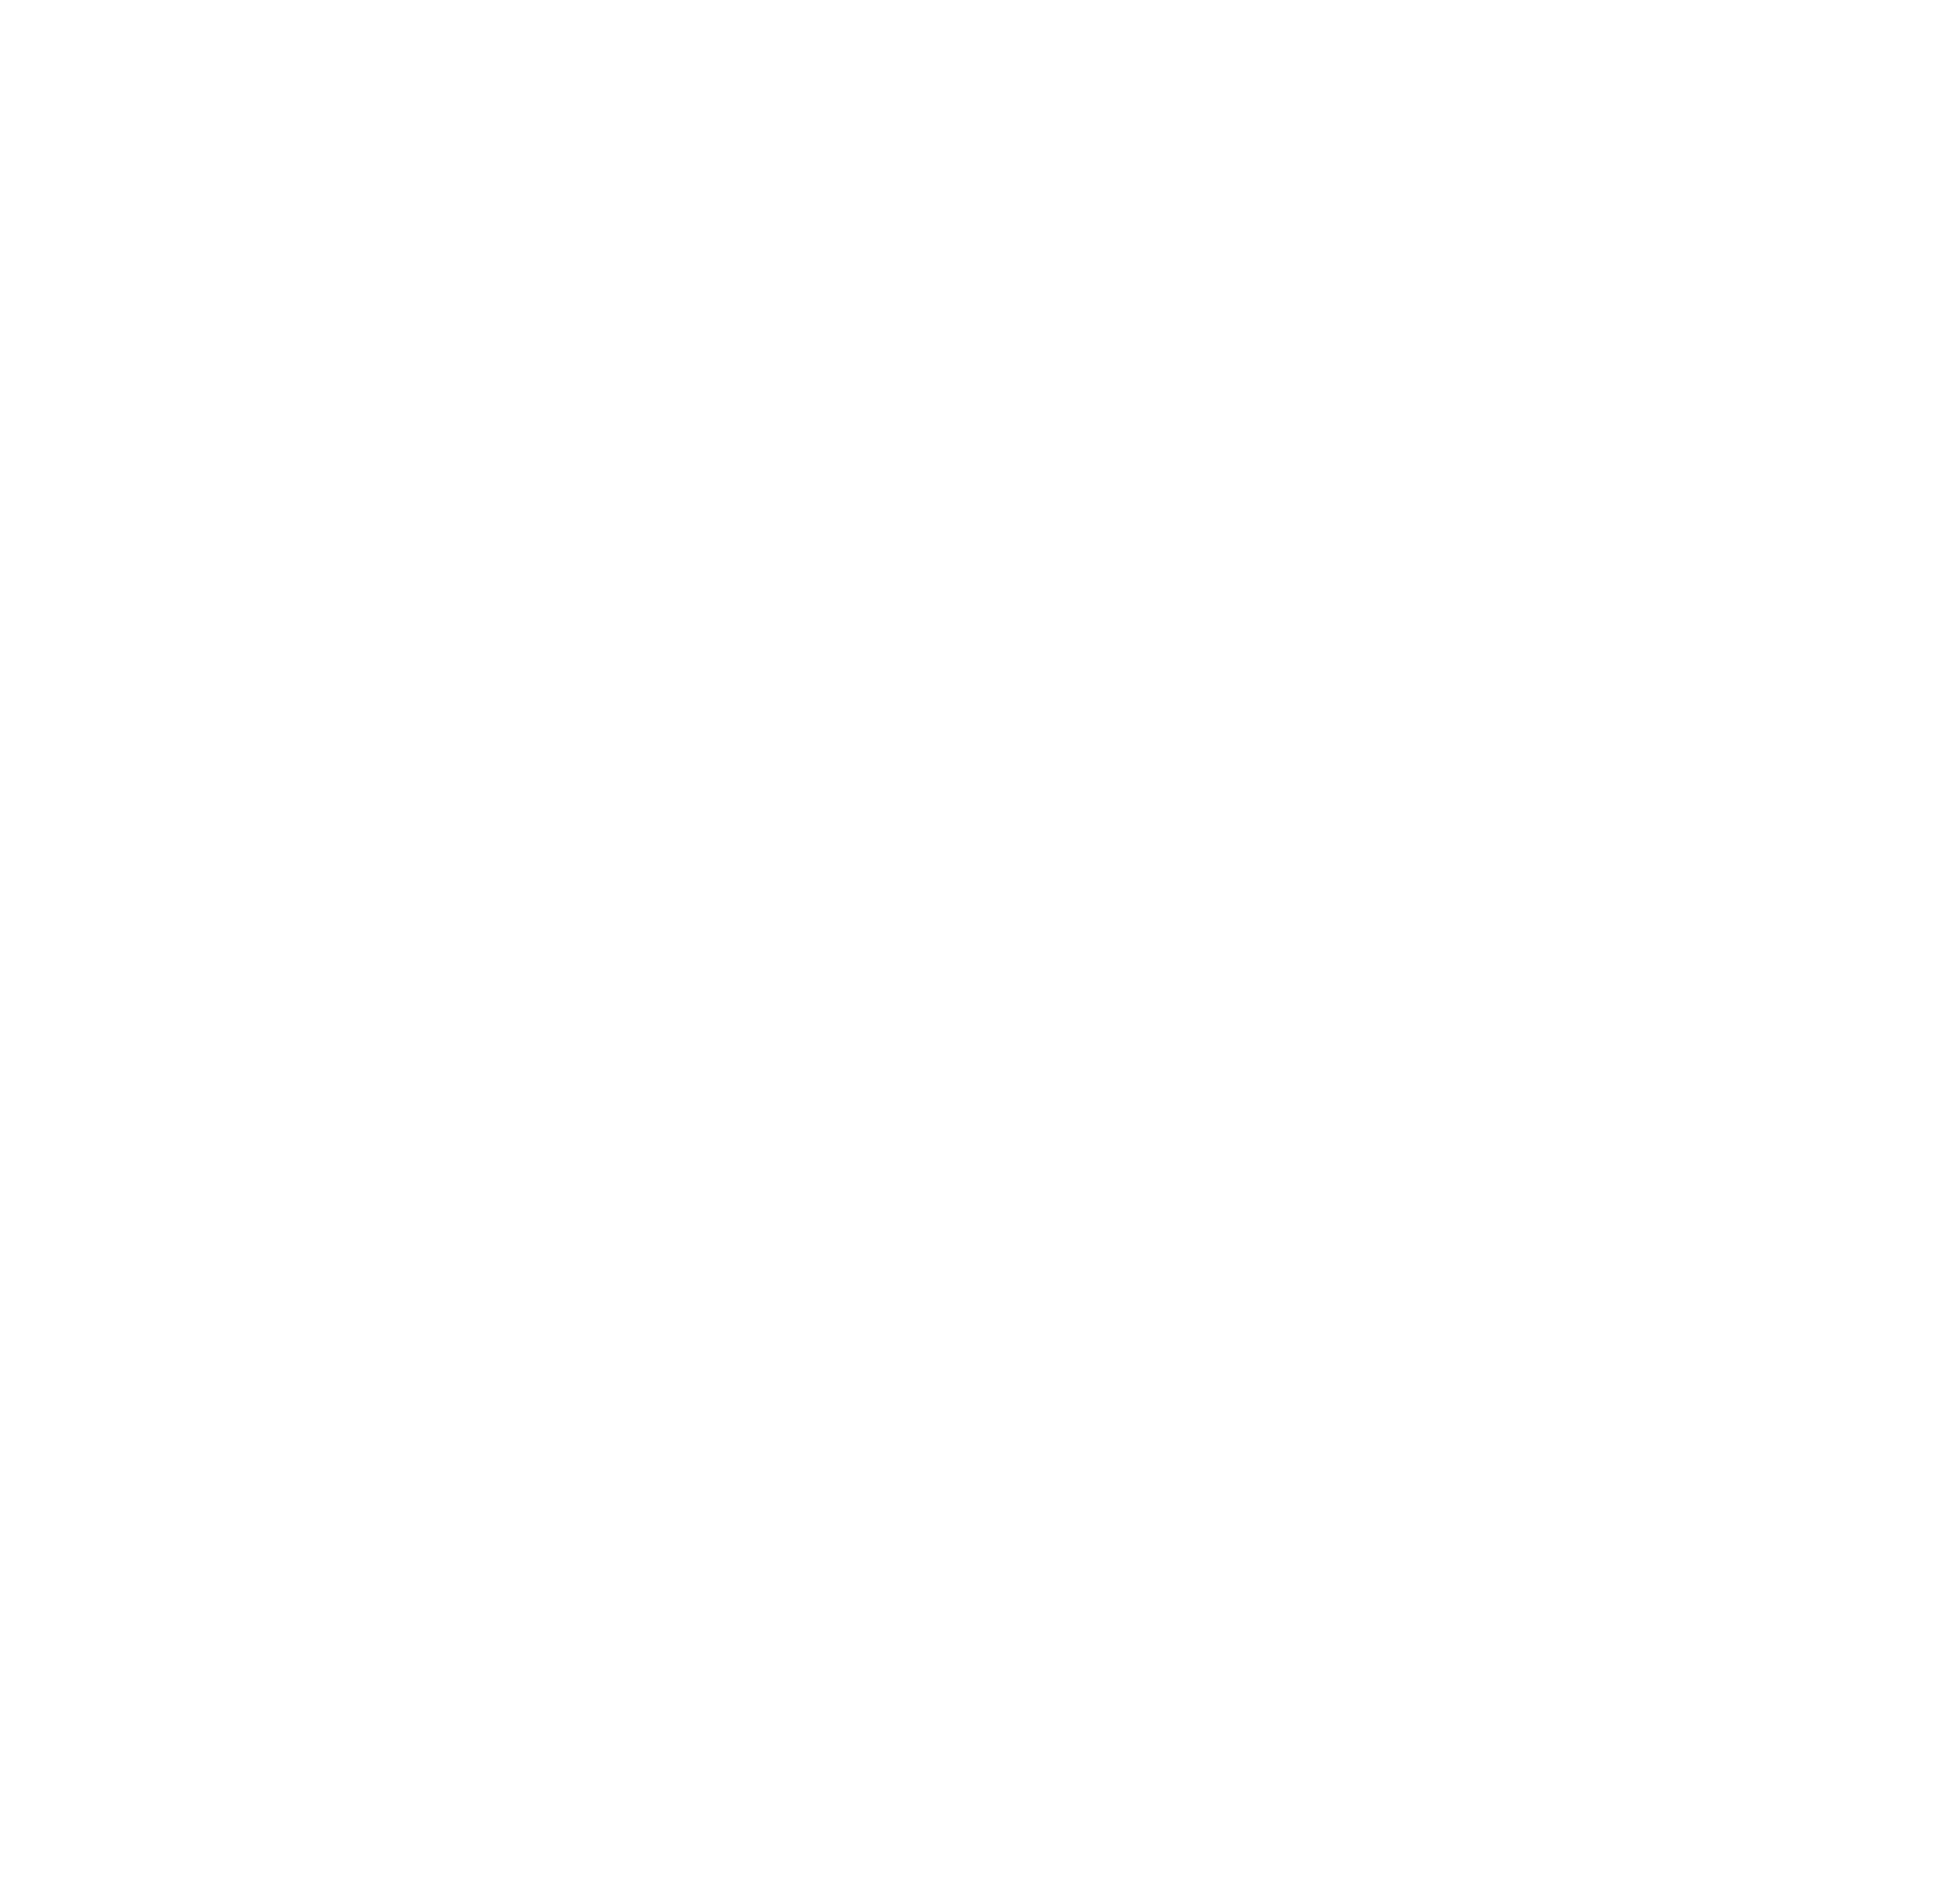 RSA, sello de Responsabilidad Social en Aragón, concedido por el Instituto Aragonés de Fomento del Gobierno de Aragón.